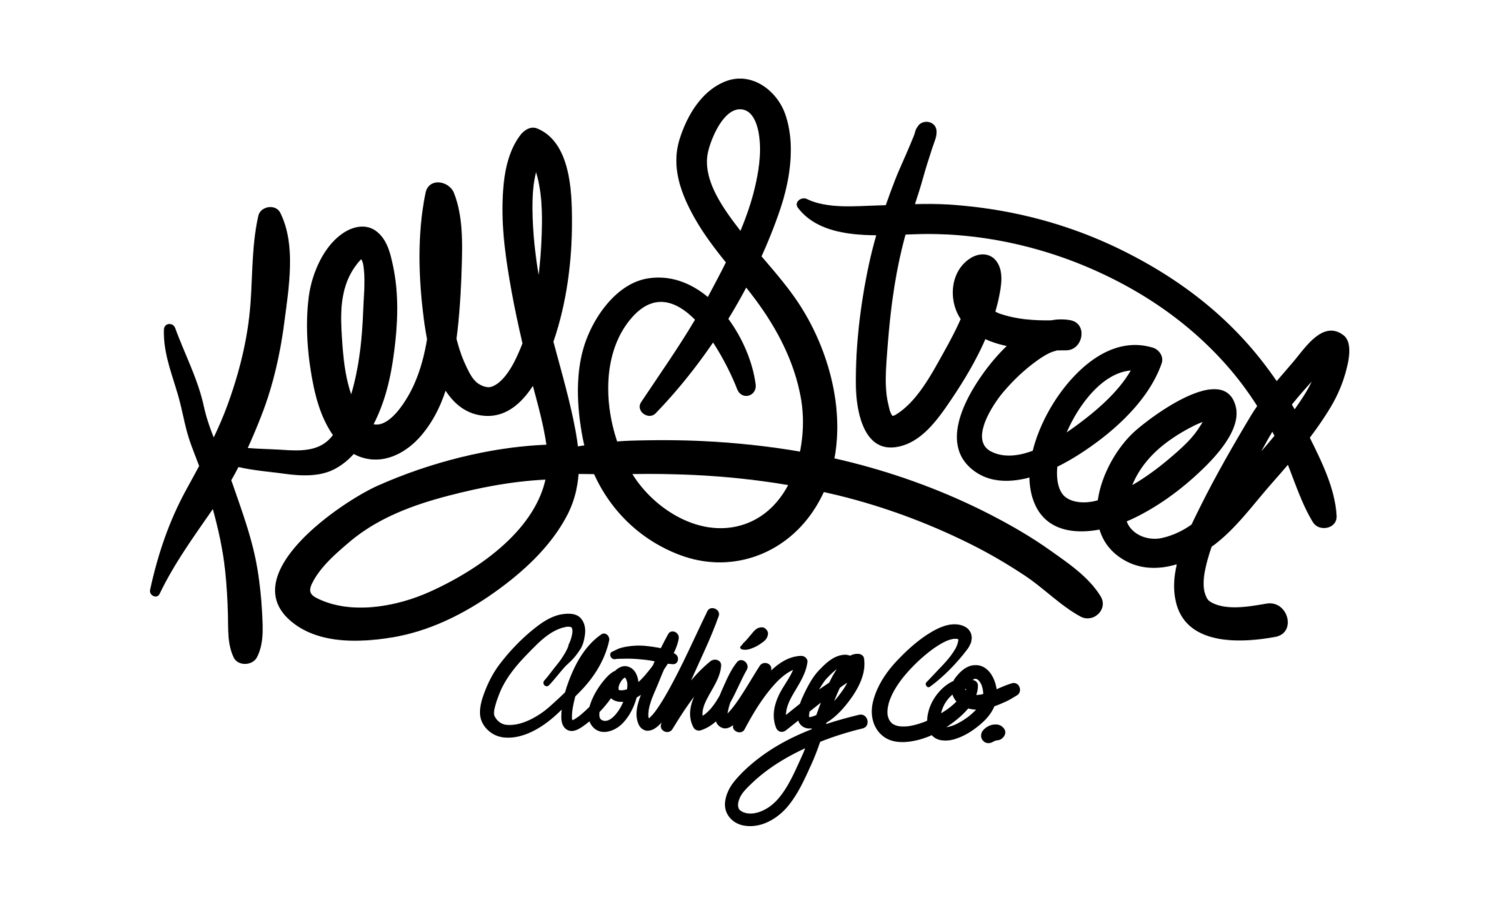 Street Clothing Logo - Key Street Clothing Co